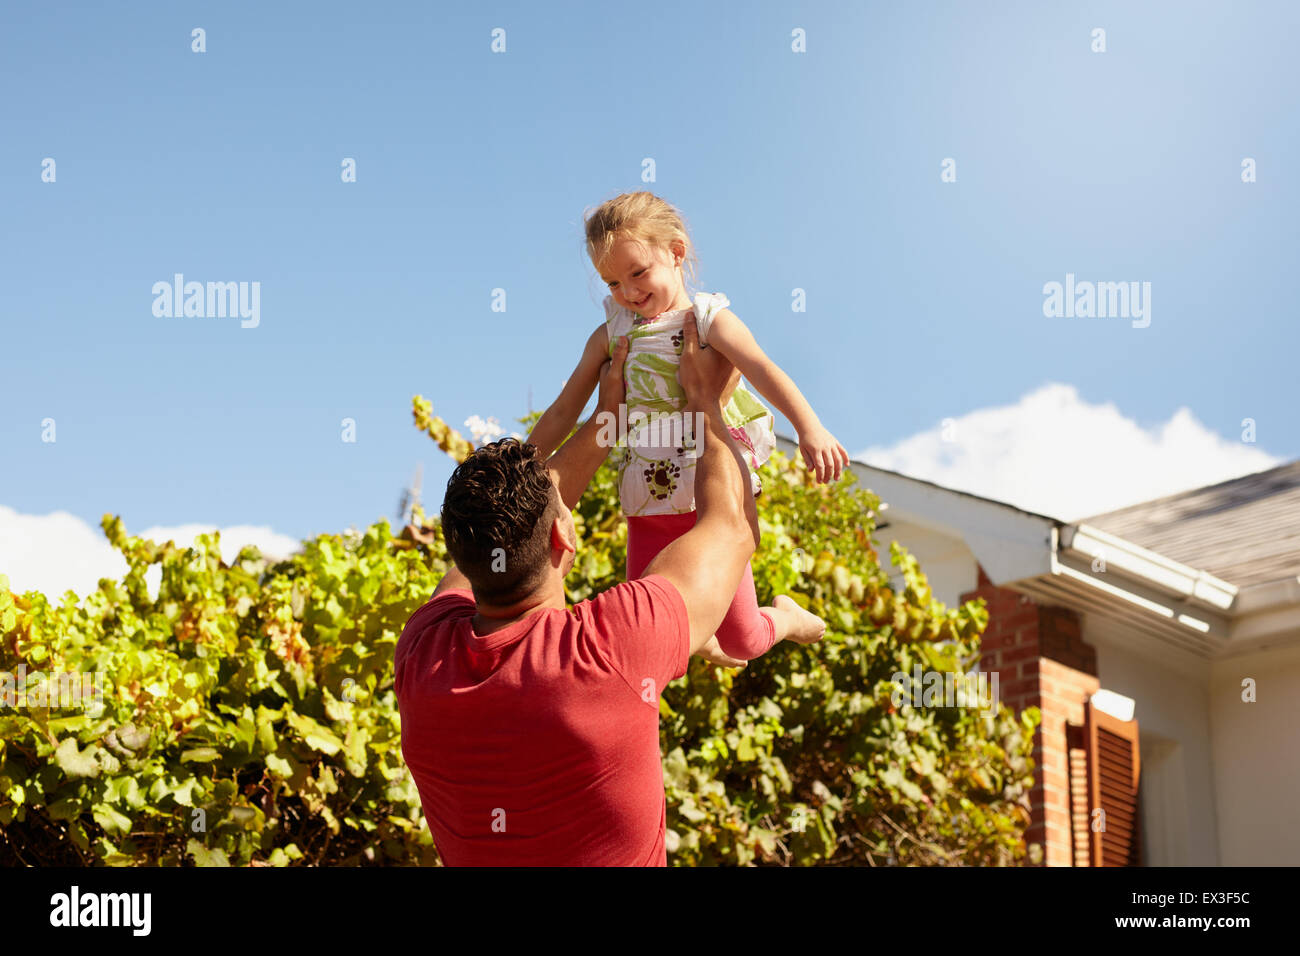 Junger Mann seiner Tochter hoch in die Luft heben. Glücklicher Vater und Tochter spielen in ihrem Hinterhof an einem sonnigen Tag. Stockfoto